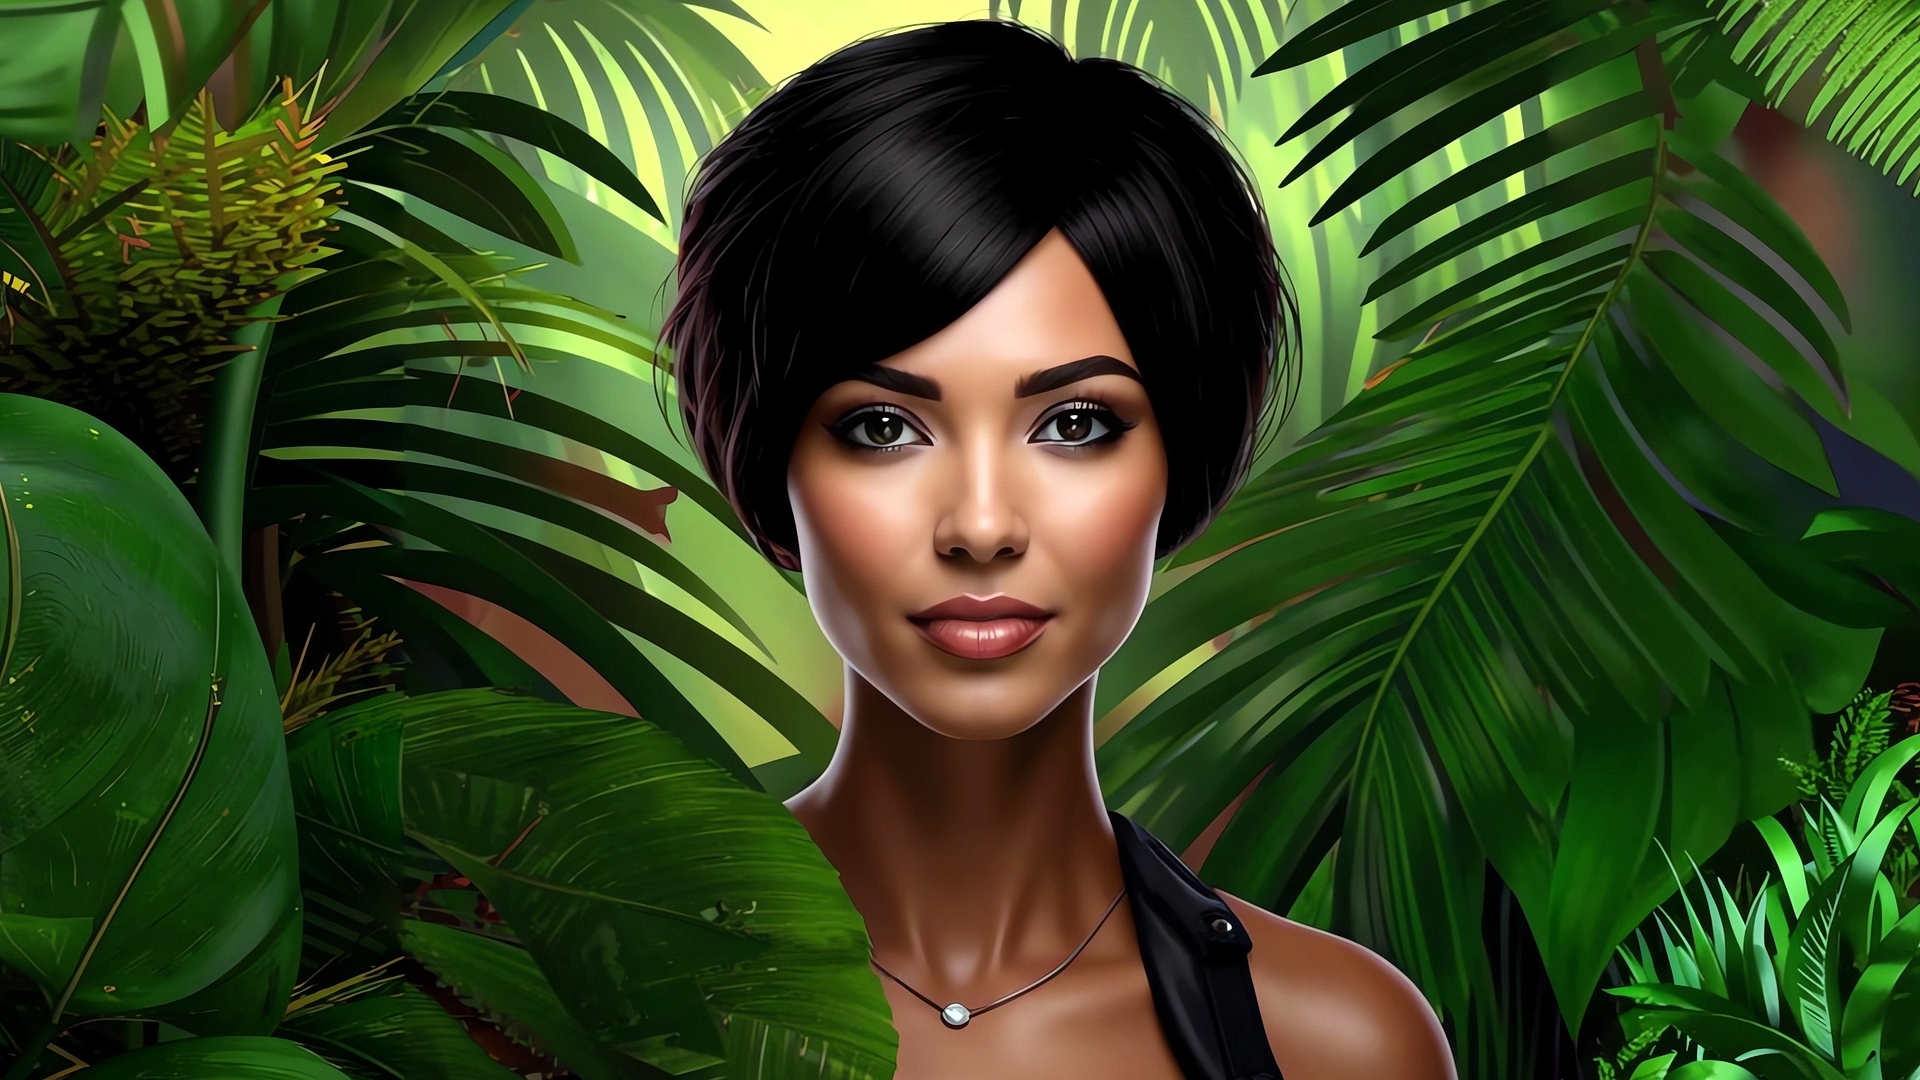 Бесплатное фото Портрет девушки брюнетки на фоне тропического леса